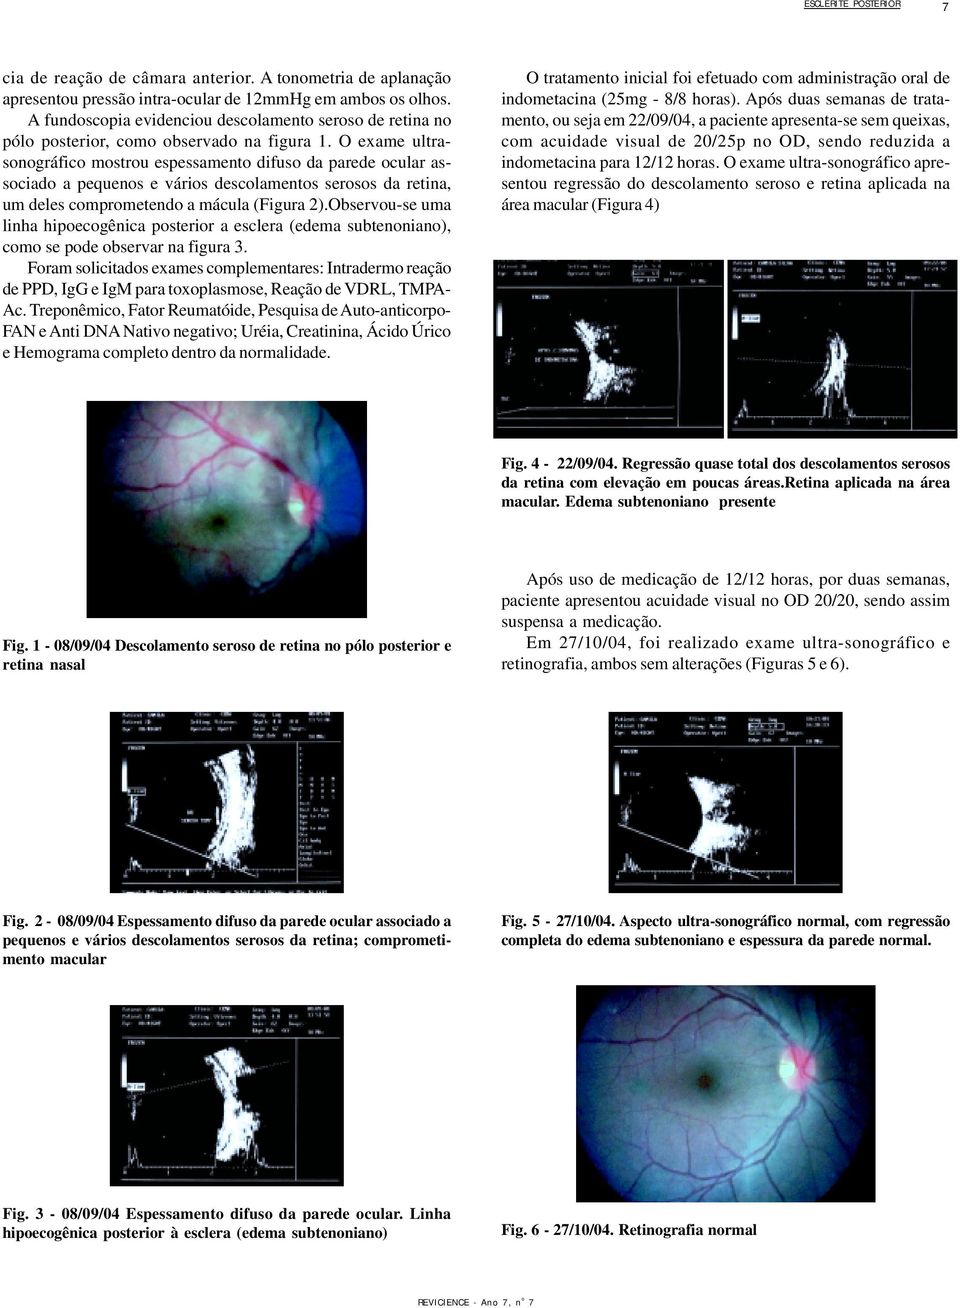 O exame ultrasonográfico mostrou espessamento difuso da parede ocular associado a pequenos e vários descolamentos serosos da retina, um deles comprometendo a mácula (Figura 2).